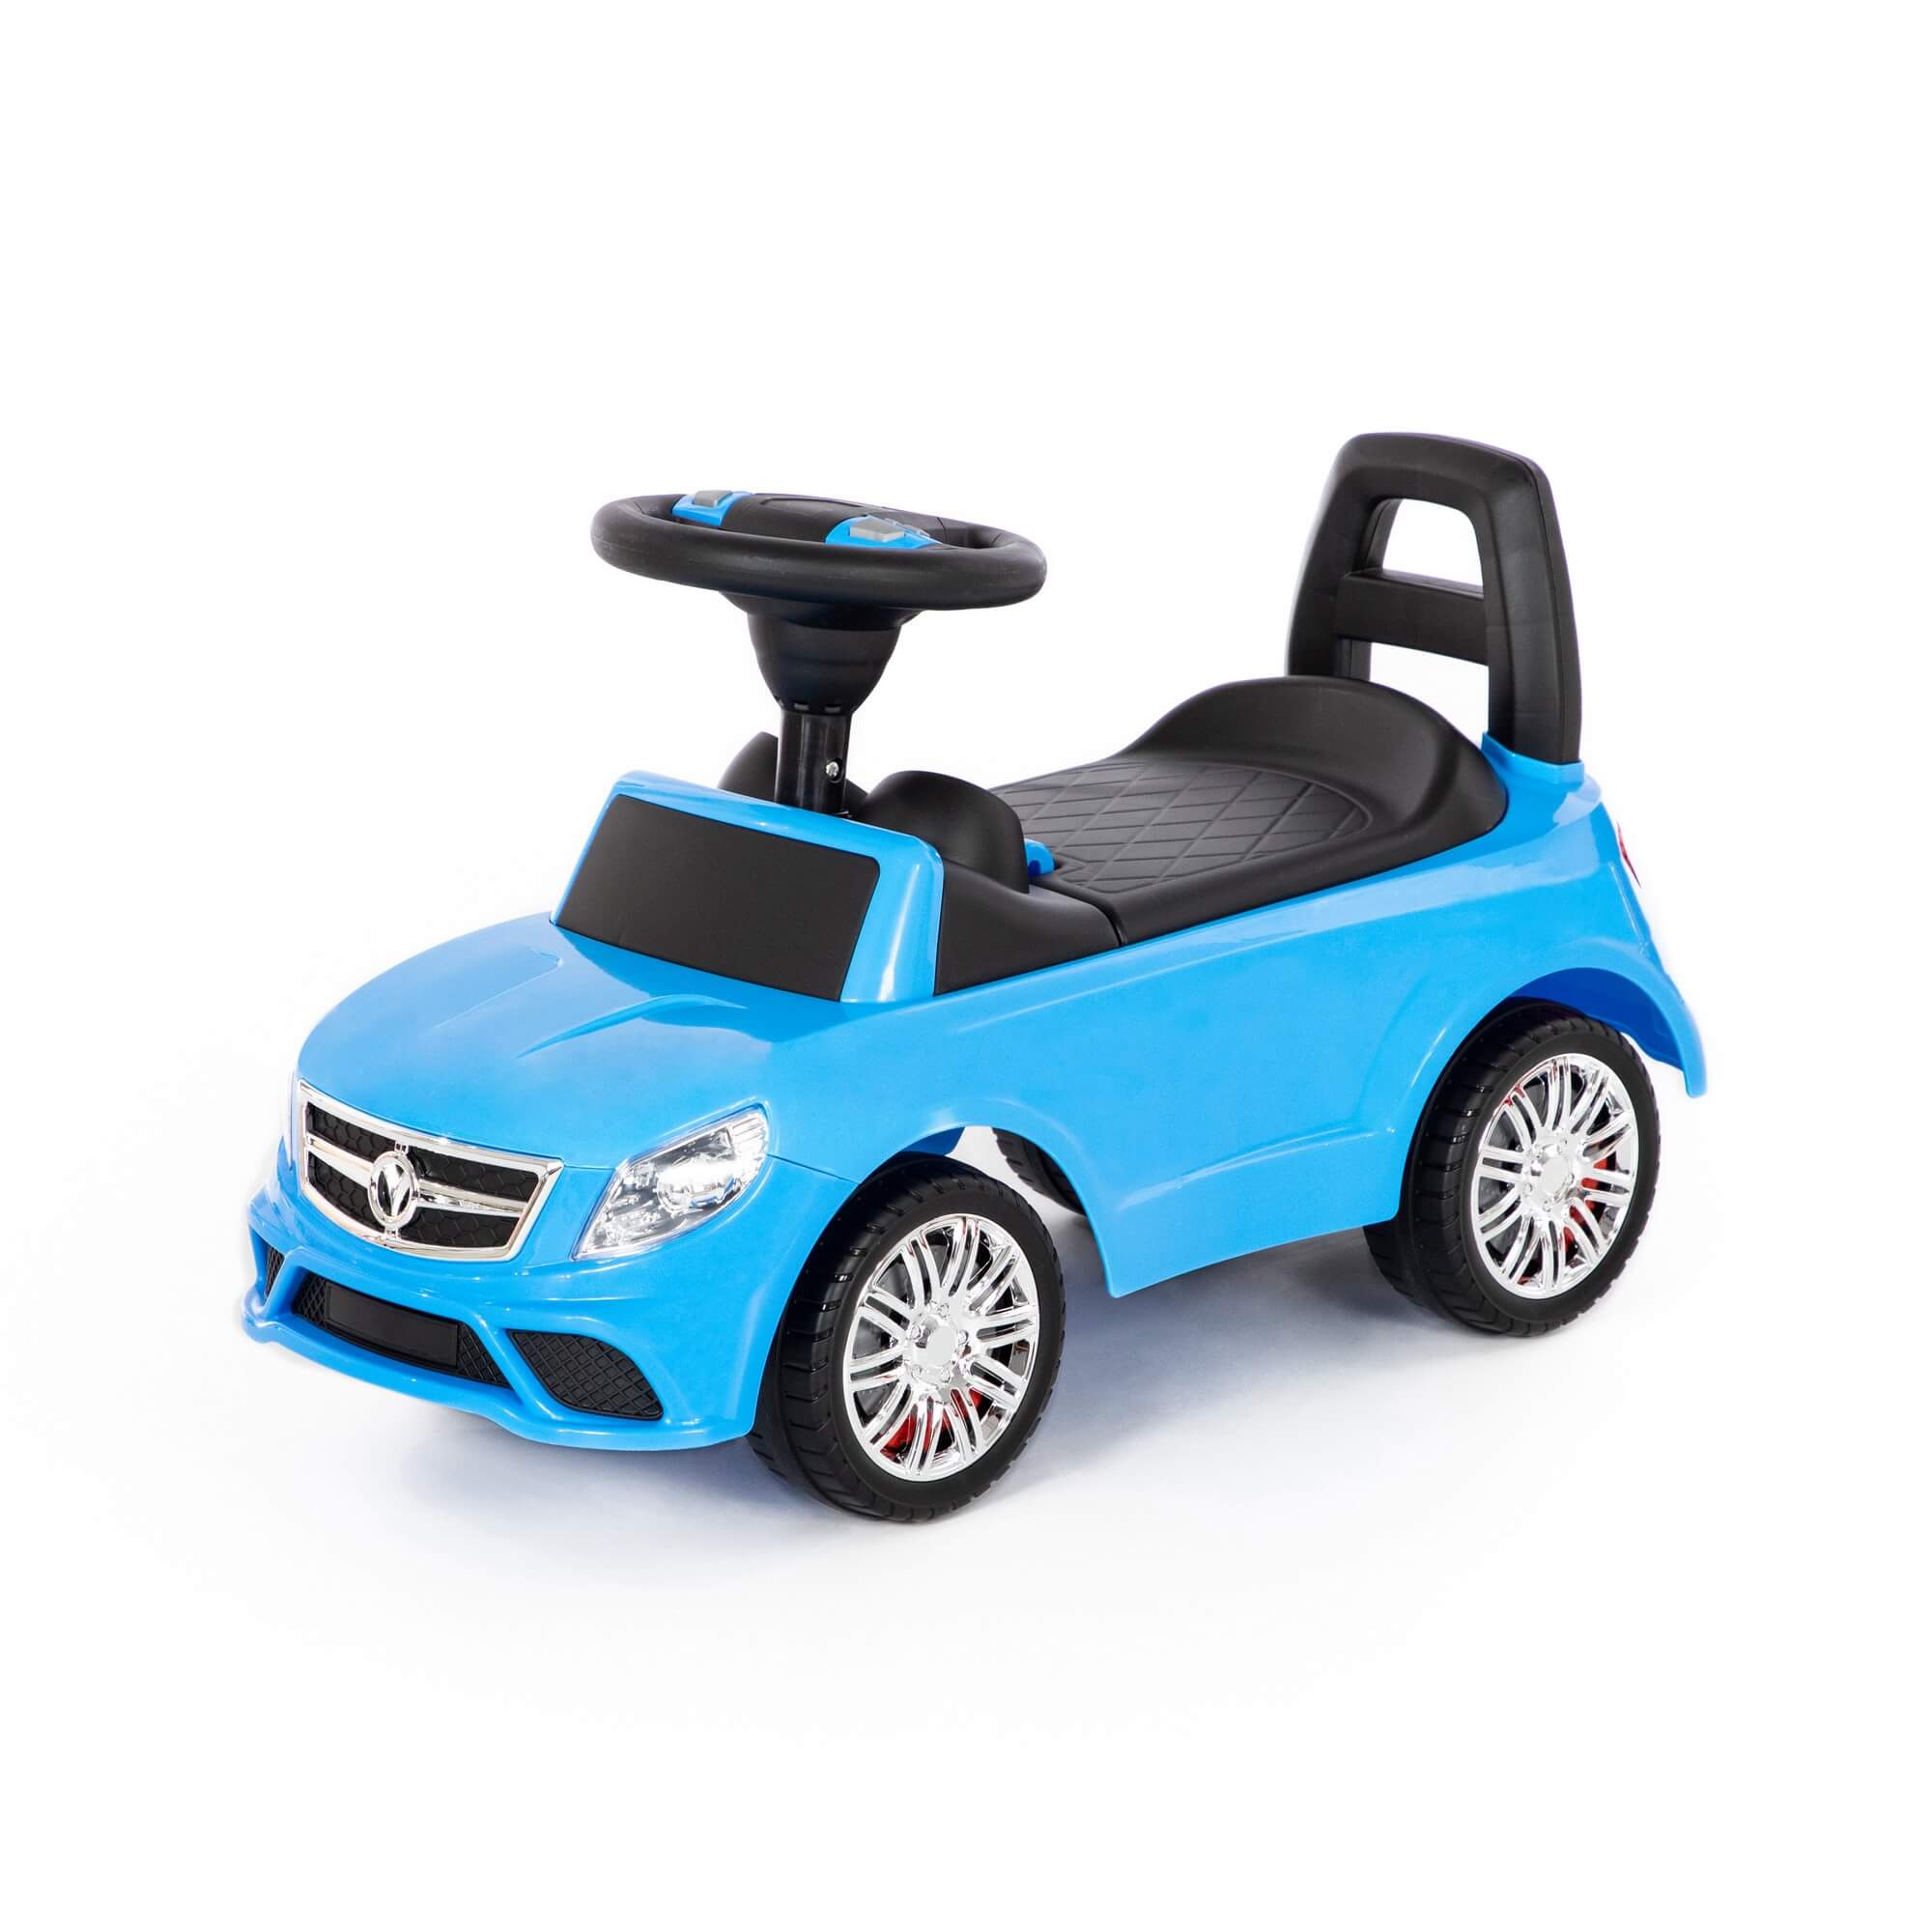 Каталка-автомобиль SuperCar №3 со звуковым сигналом, цвет голубой Полесье 84484 каталка полесье автомобиль supercar 1 со звуковым сигналом